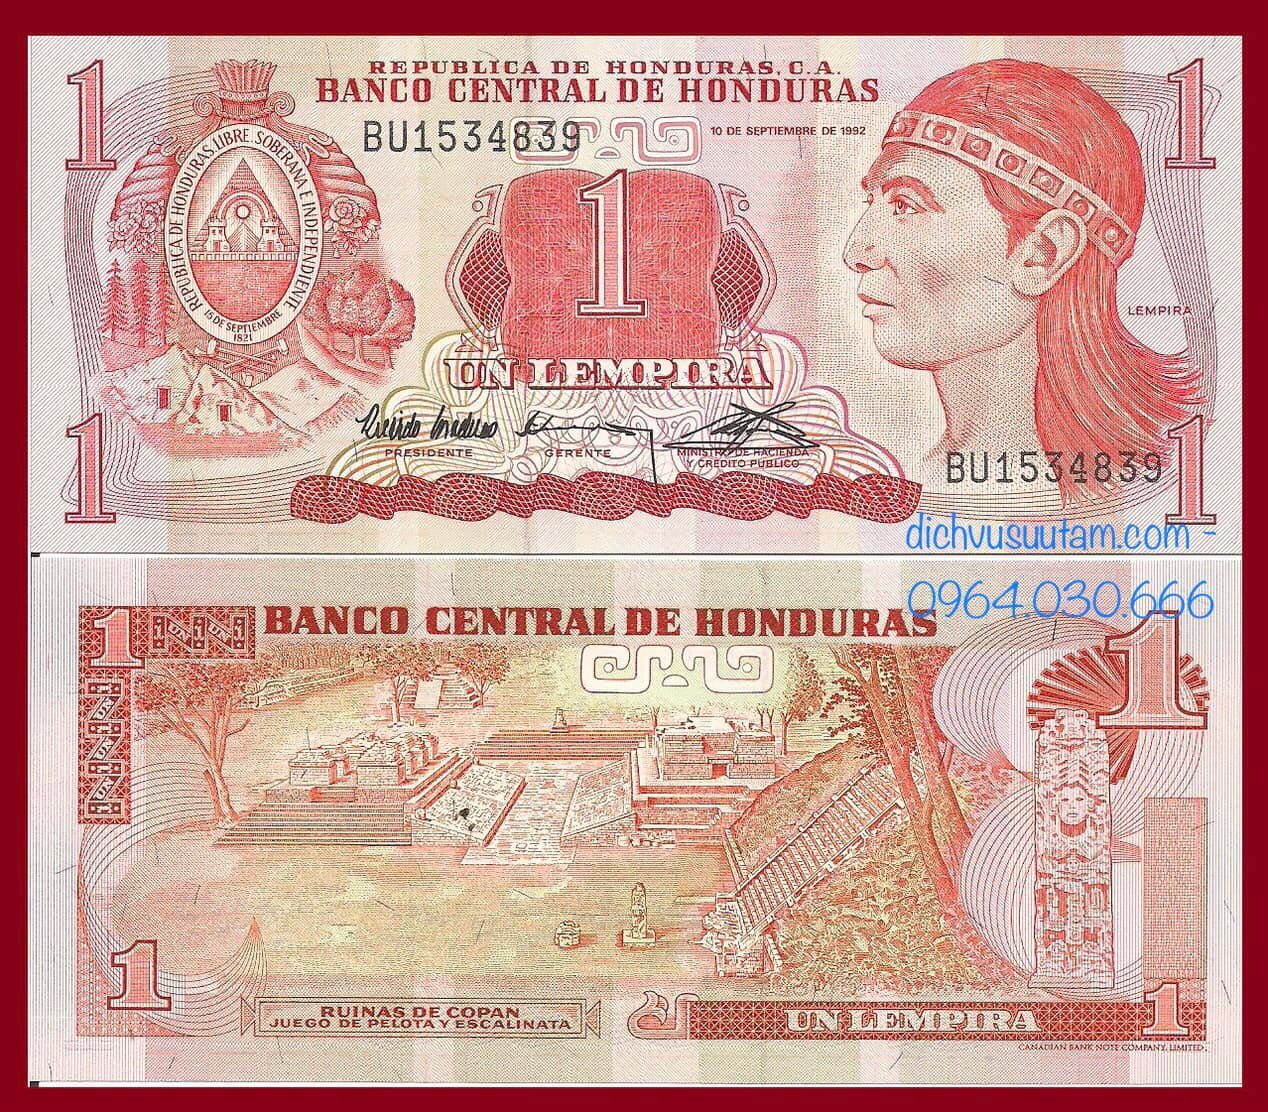 Tiền Cộng hòa Honduras 1 lempira sưu tầm